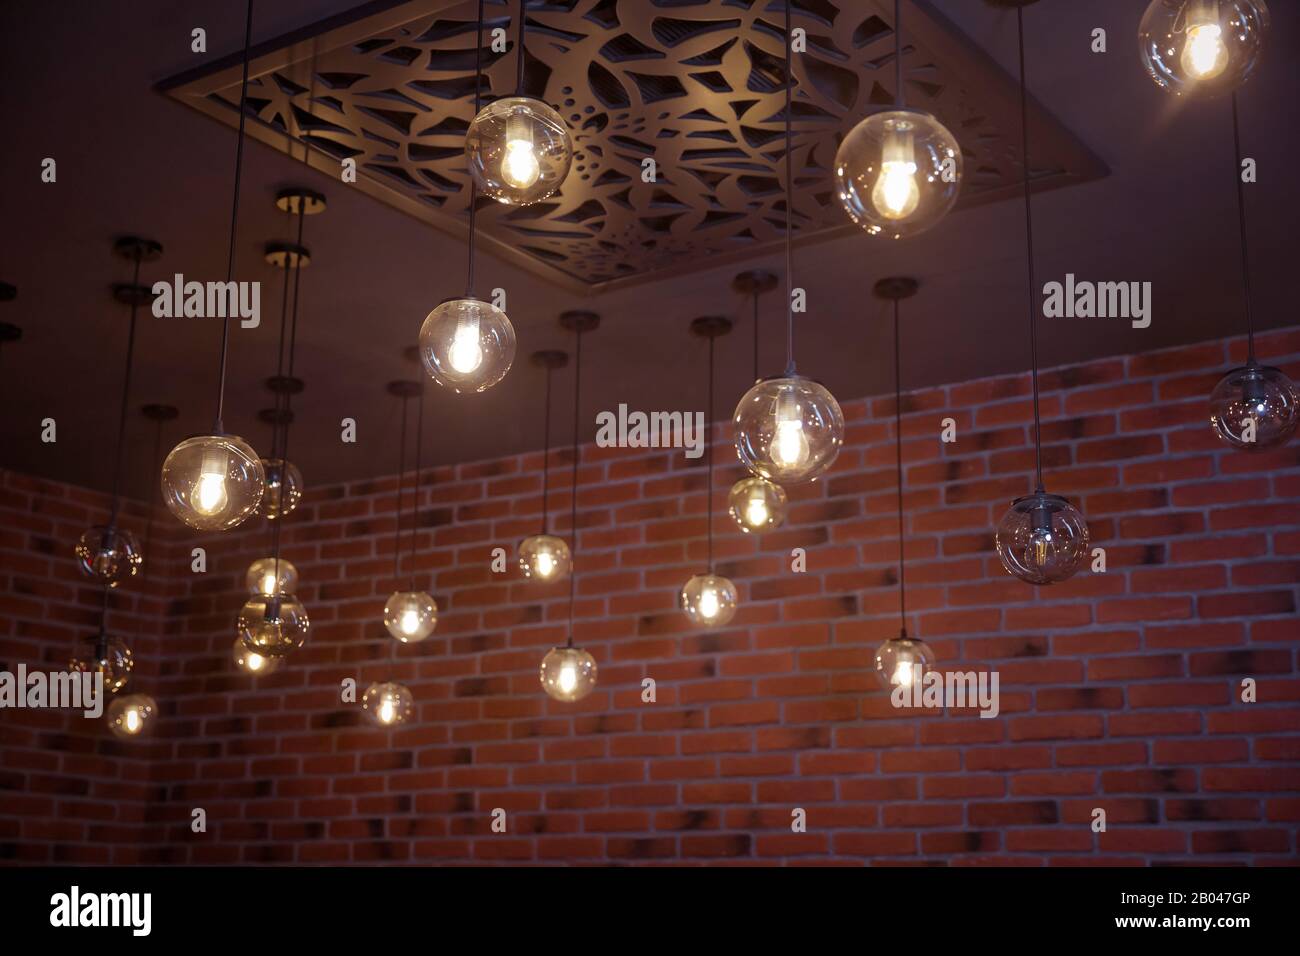 Schön retro Luxus Lampe Einrichtung glühende. Klassische verschiedene retro Glühlampen auf Mauer Hintergrund in der Nacht hängen. Dekorative Stockfoto